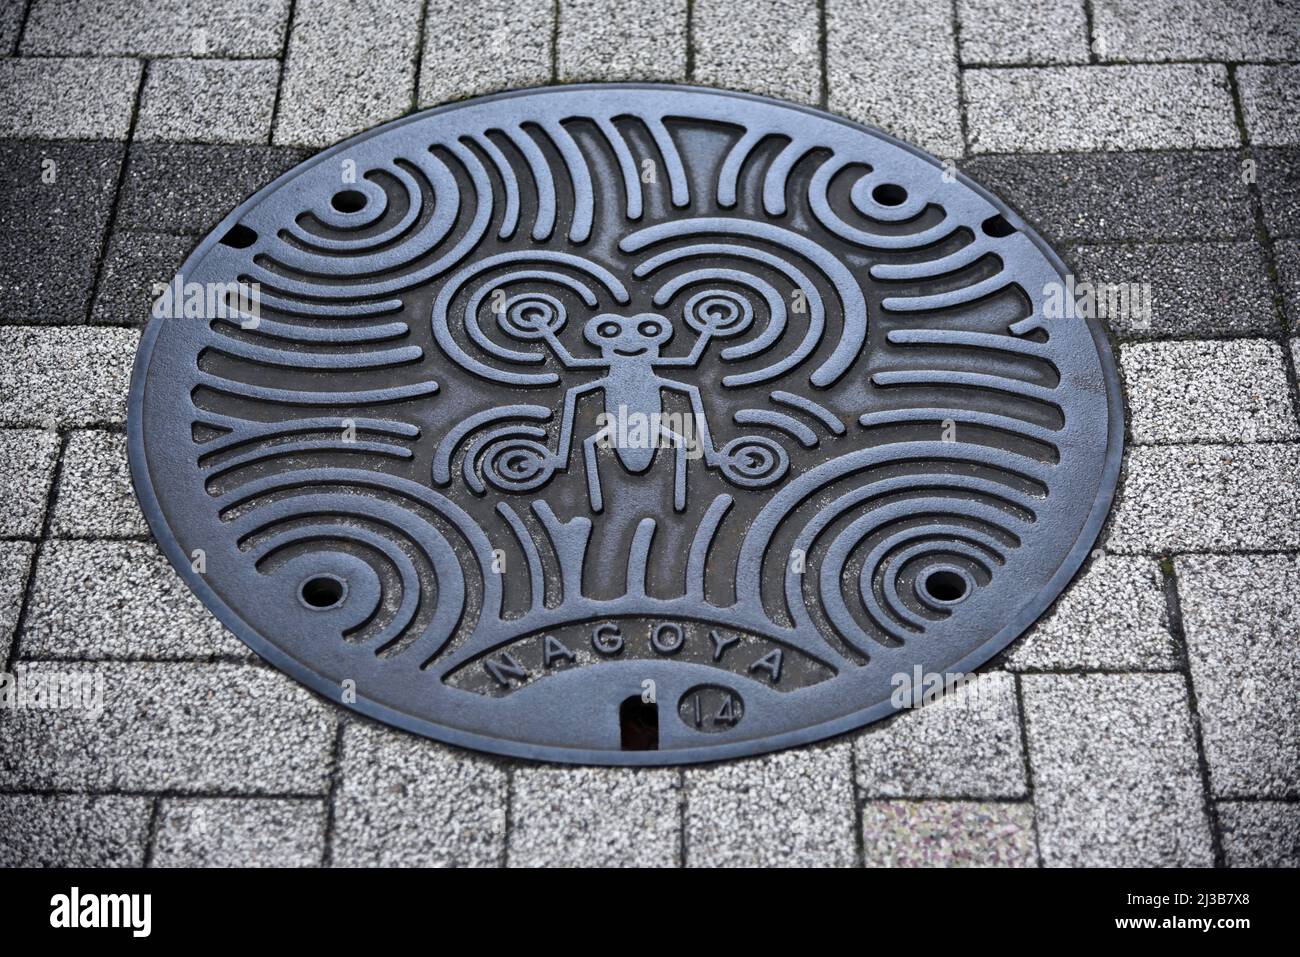 manhole cover Nagoya Japan Stock Photo